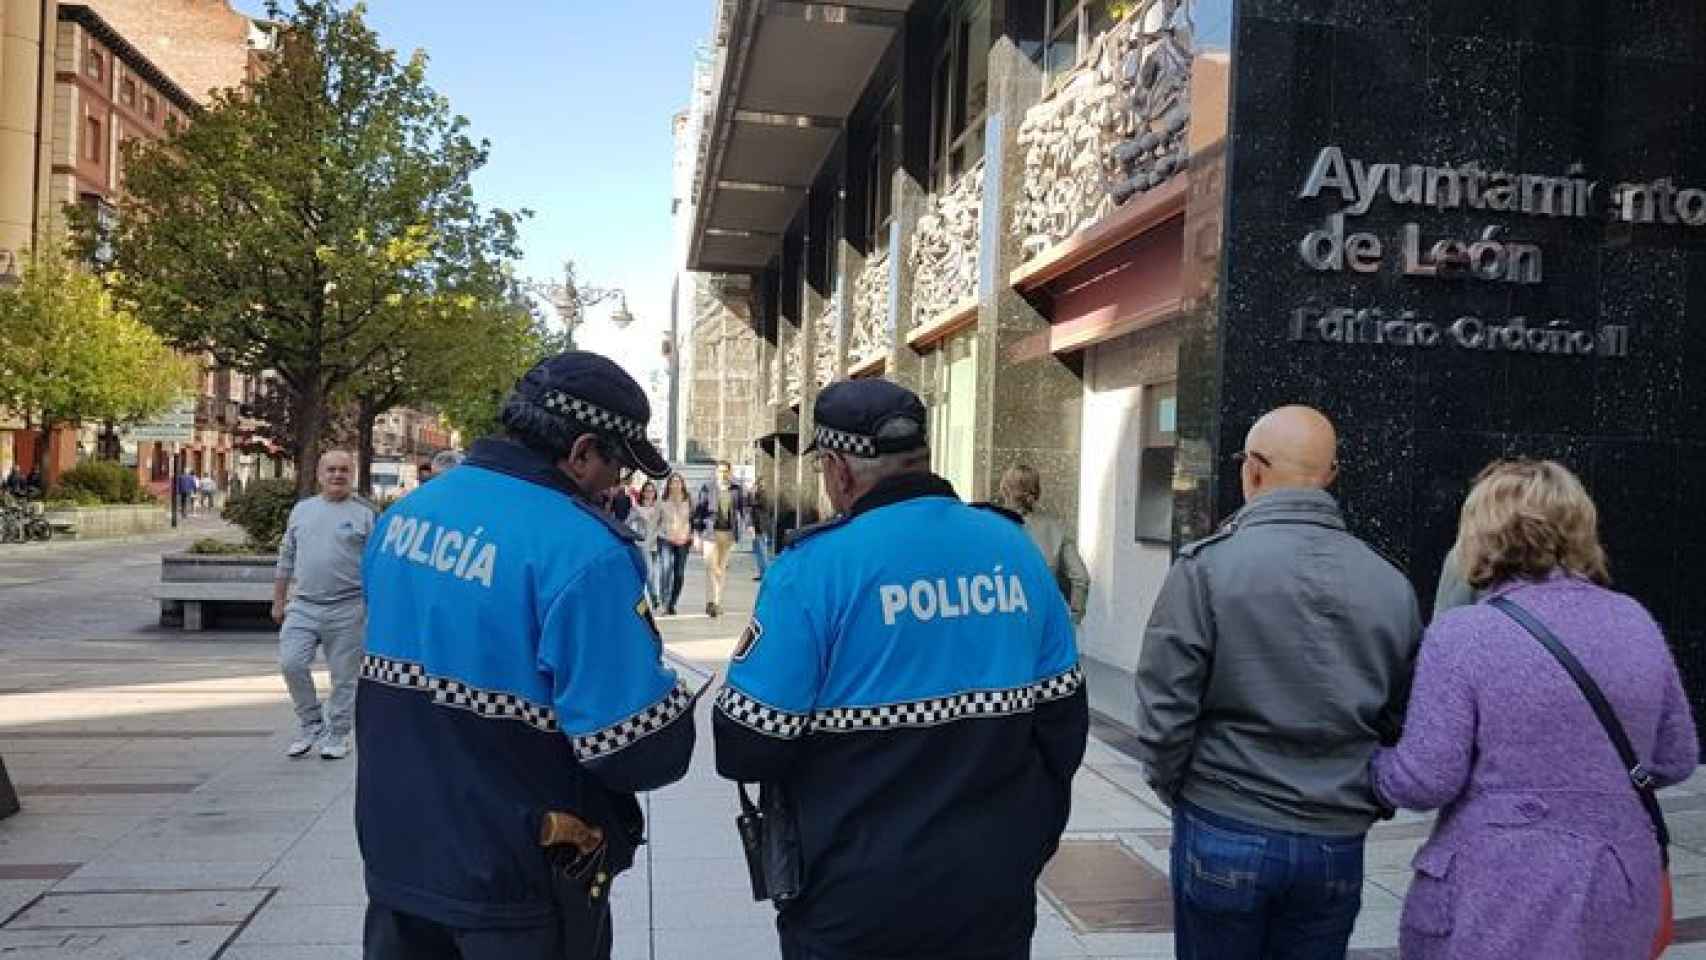 Dos agentes de la Policía durante su jornada de trabajo en León